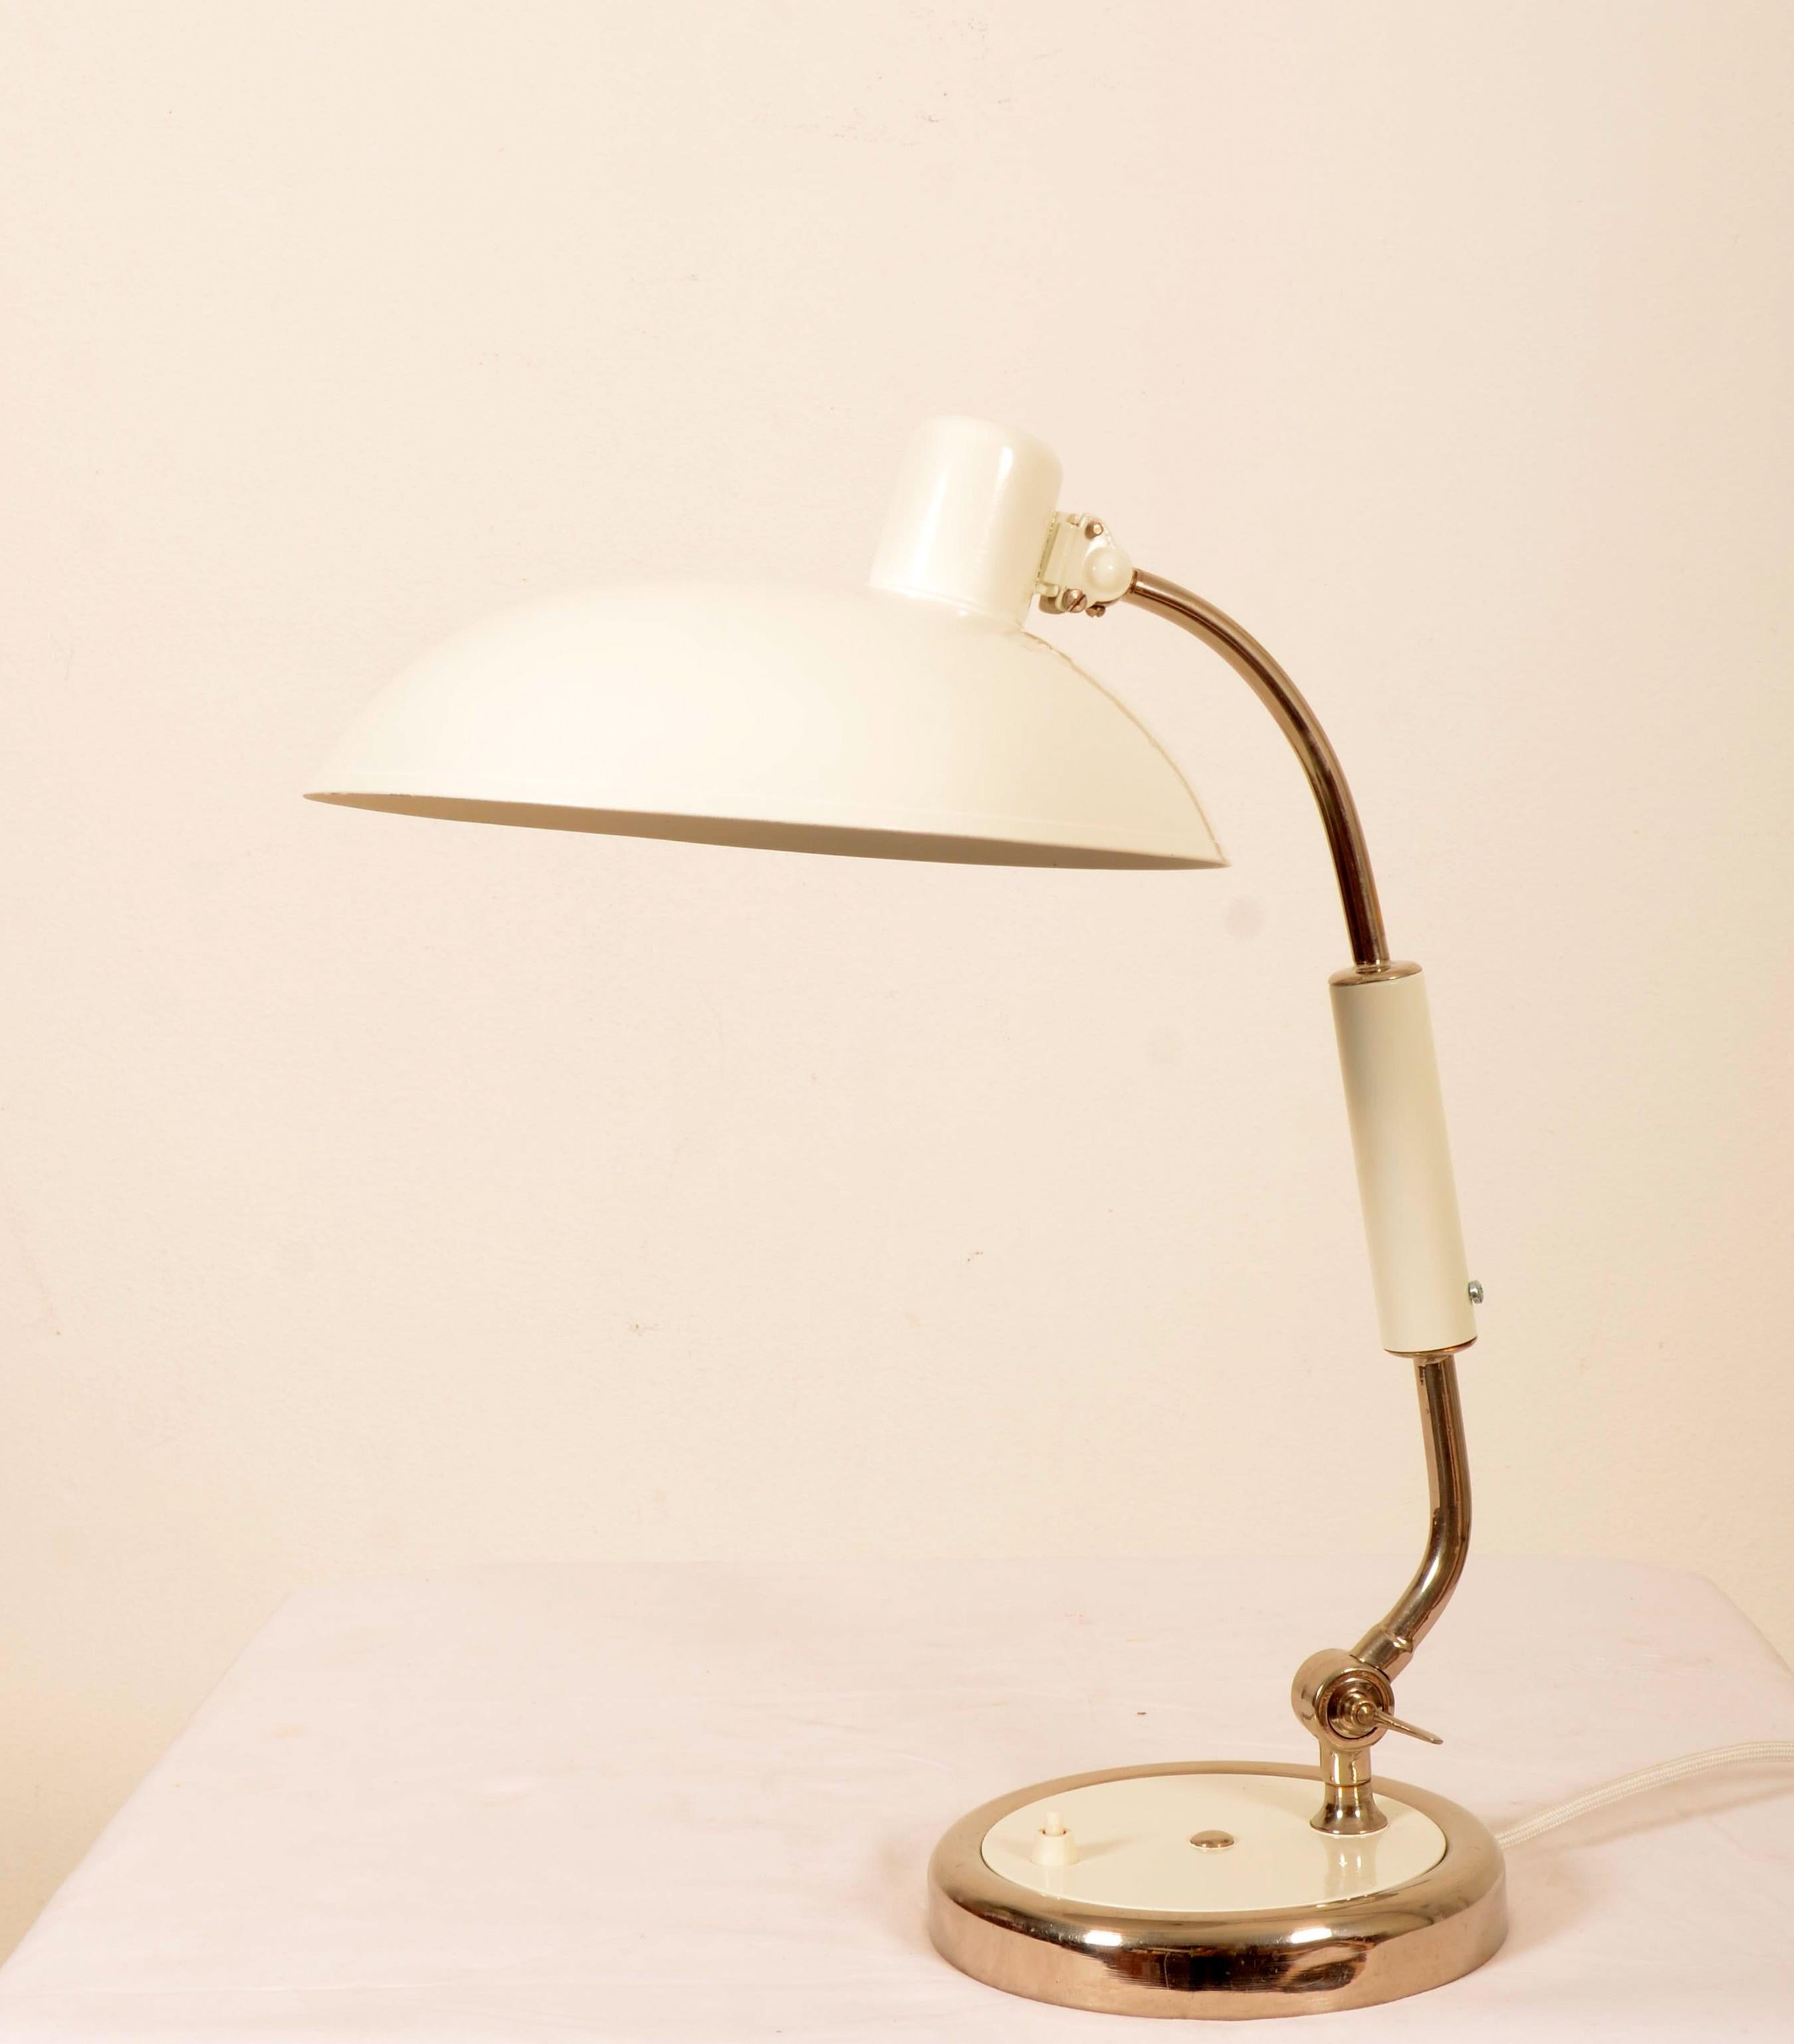 Bauhaus Tischlampe weiß lackiert aus den 1930er Jahren Modell 6632. Die Lampe ist neu lackiert.